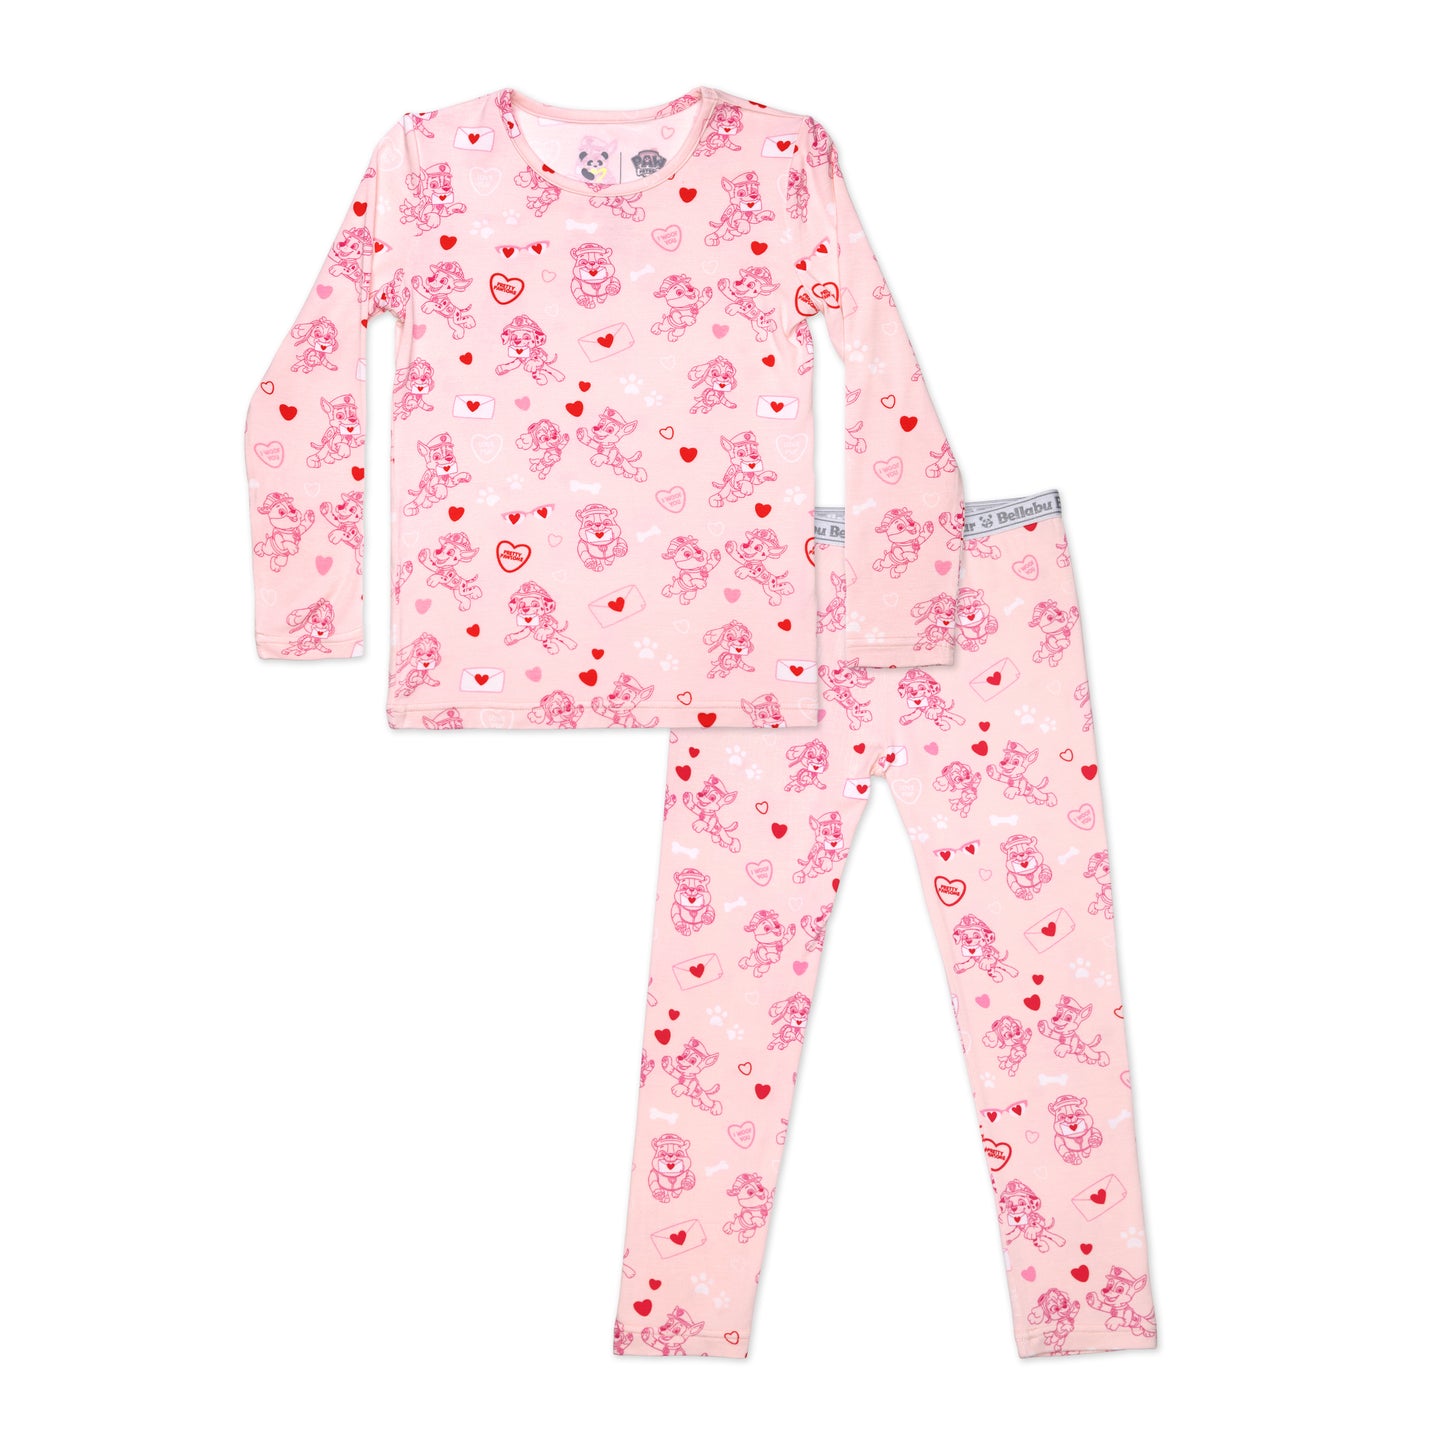 Kids Bamboo Pajamas: PAW Patrol Valentine's Pink